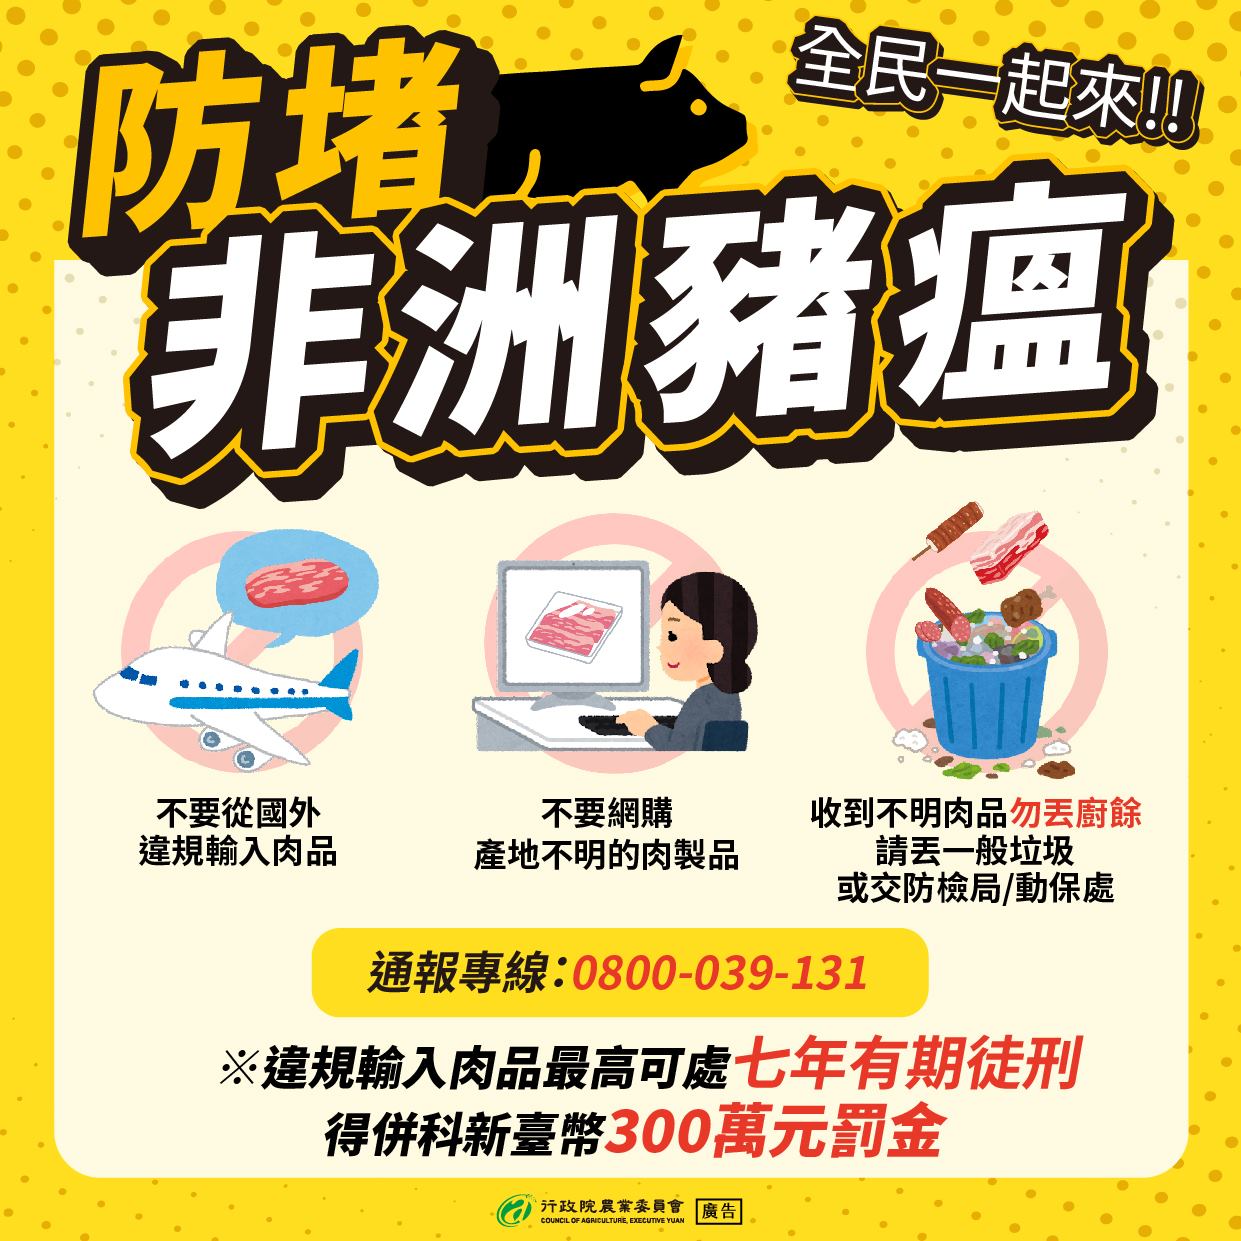 Warga diingatkan untuk tidak membawa produk daging luar masuk ke wilayah negara atau membeli produk daging dari internet. Sumber: Asosiasi Pertanian (農委會)